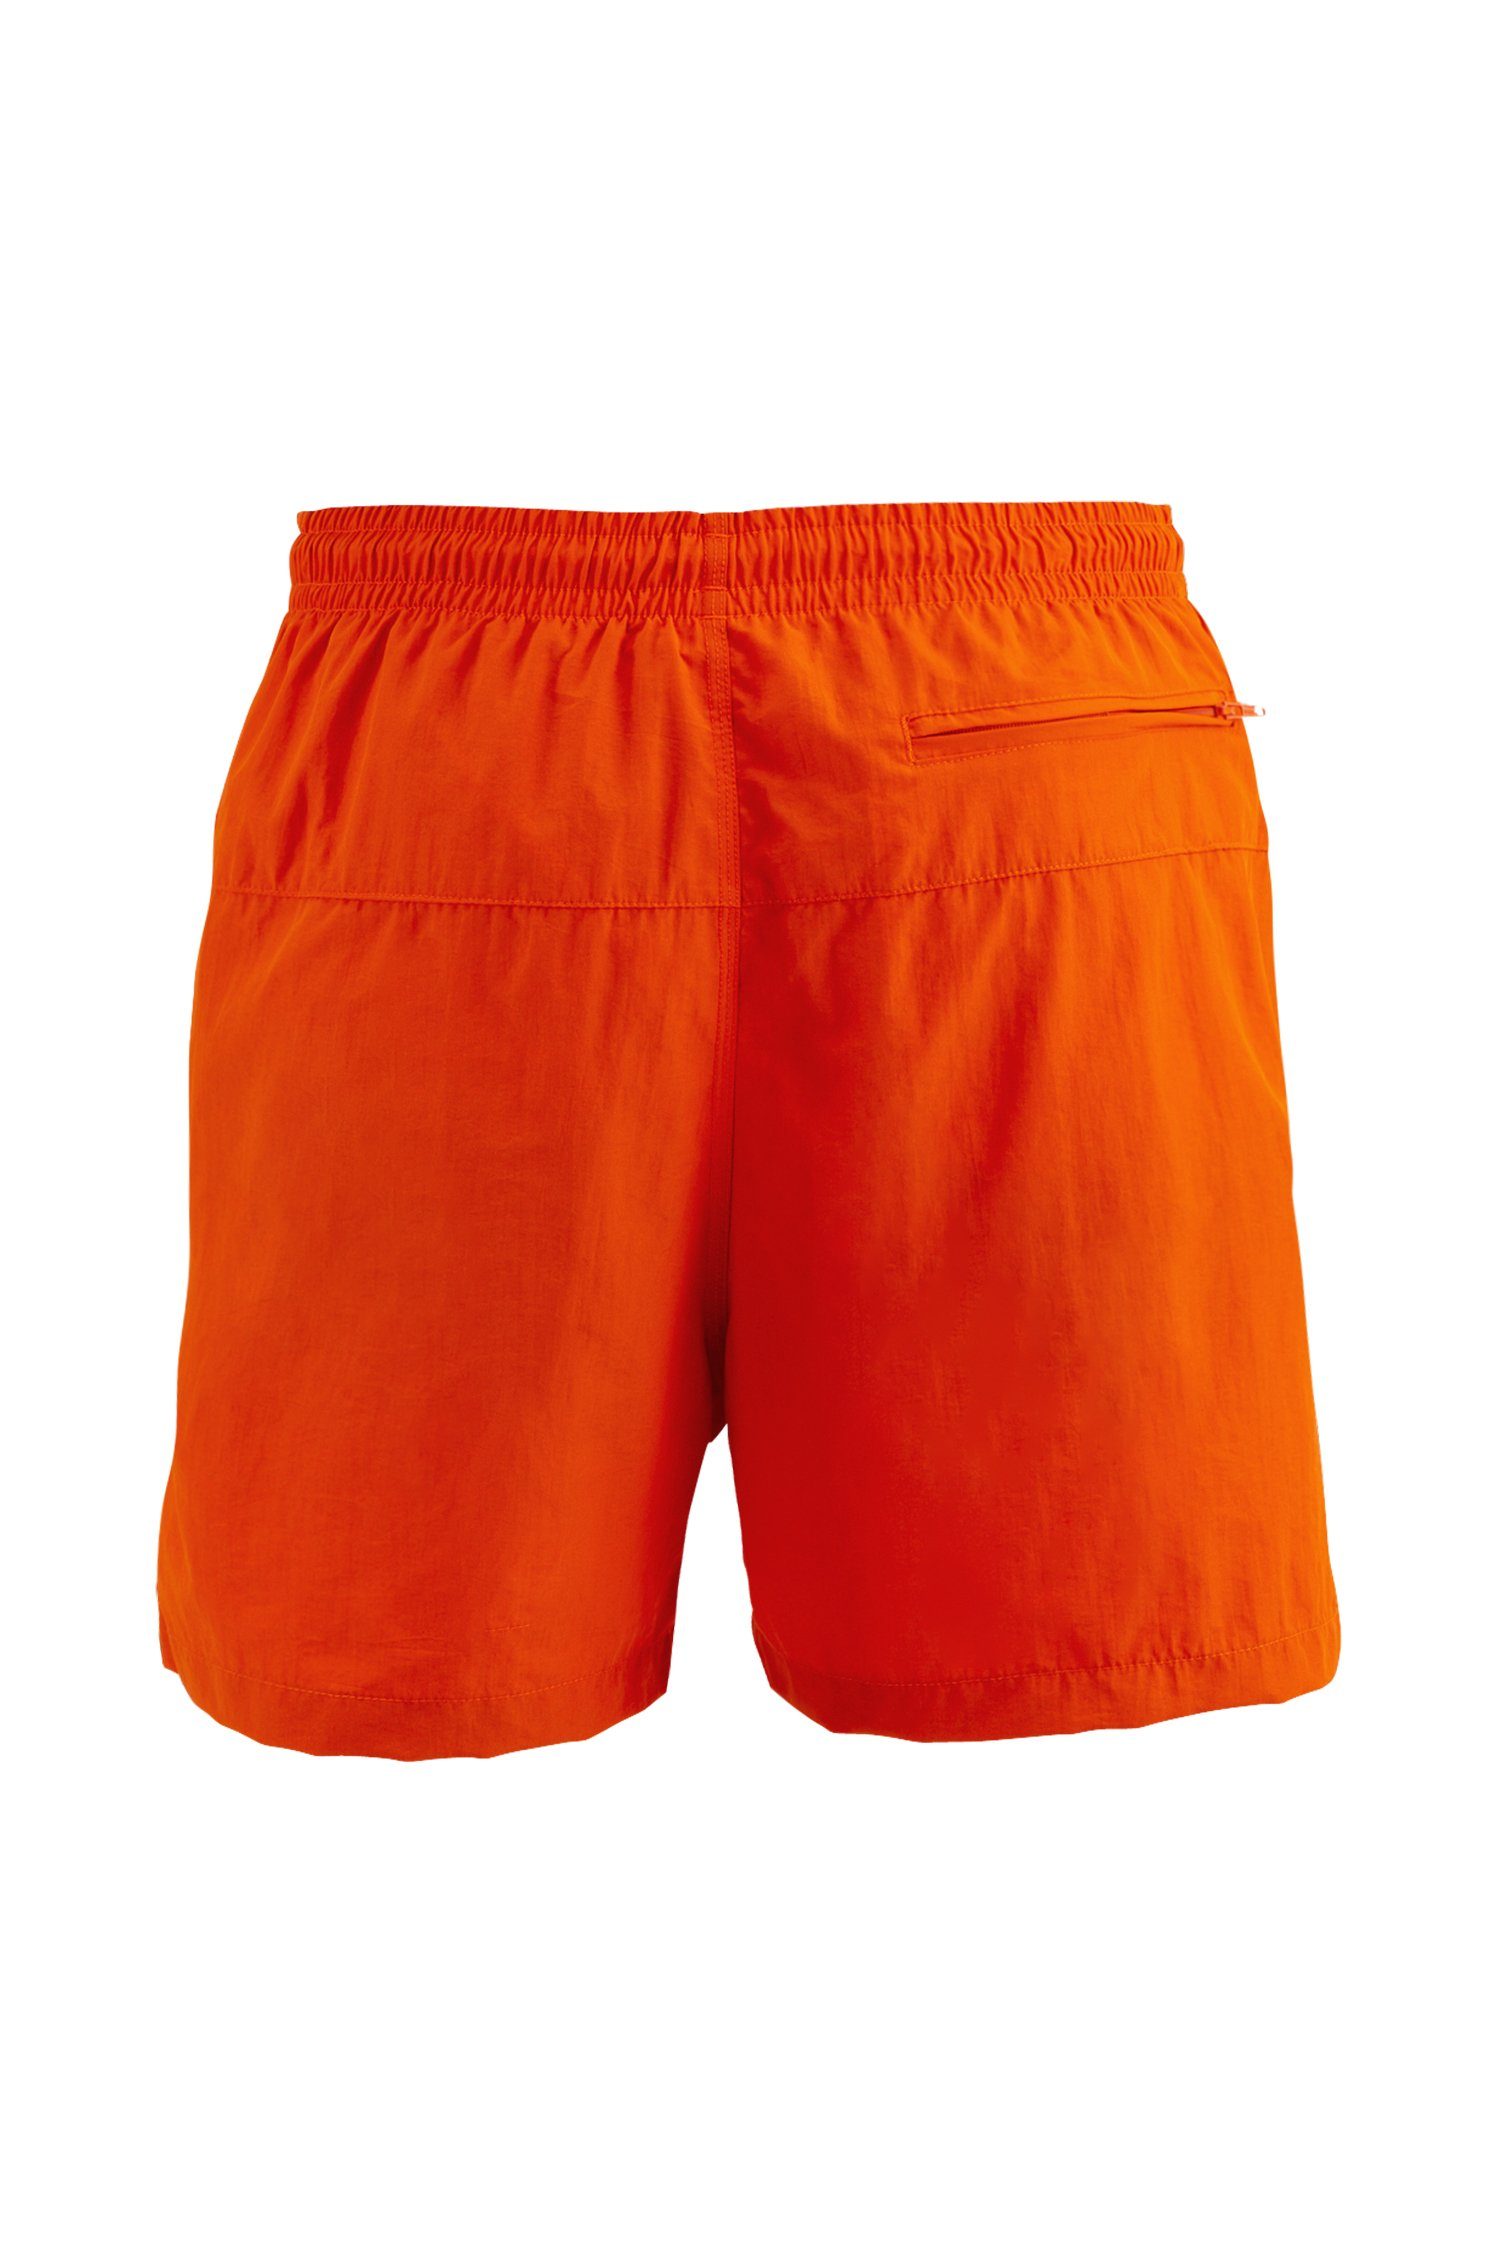 Swim - Tangerine Manufaktur13 Badeshorts Shorts schnelltrocknend Badehosen